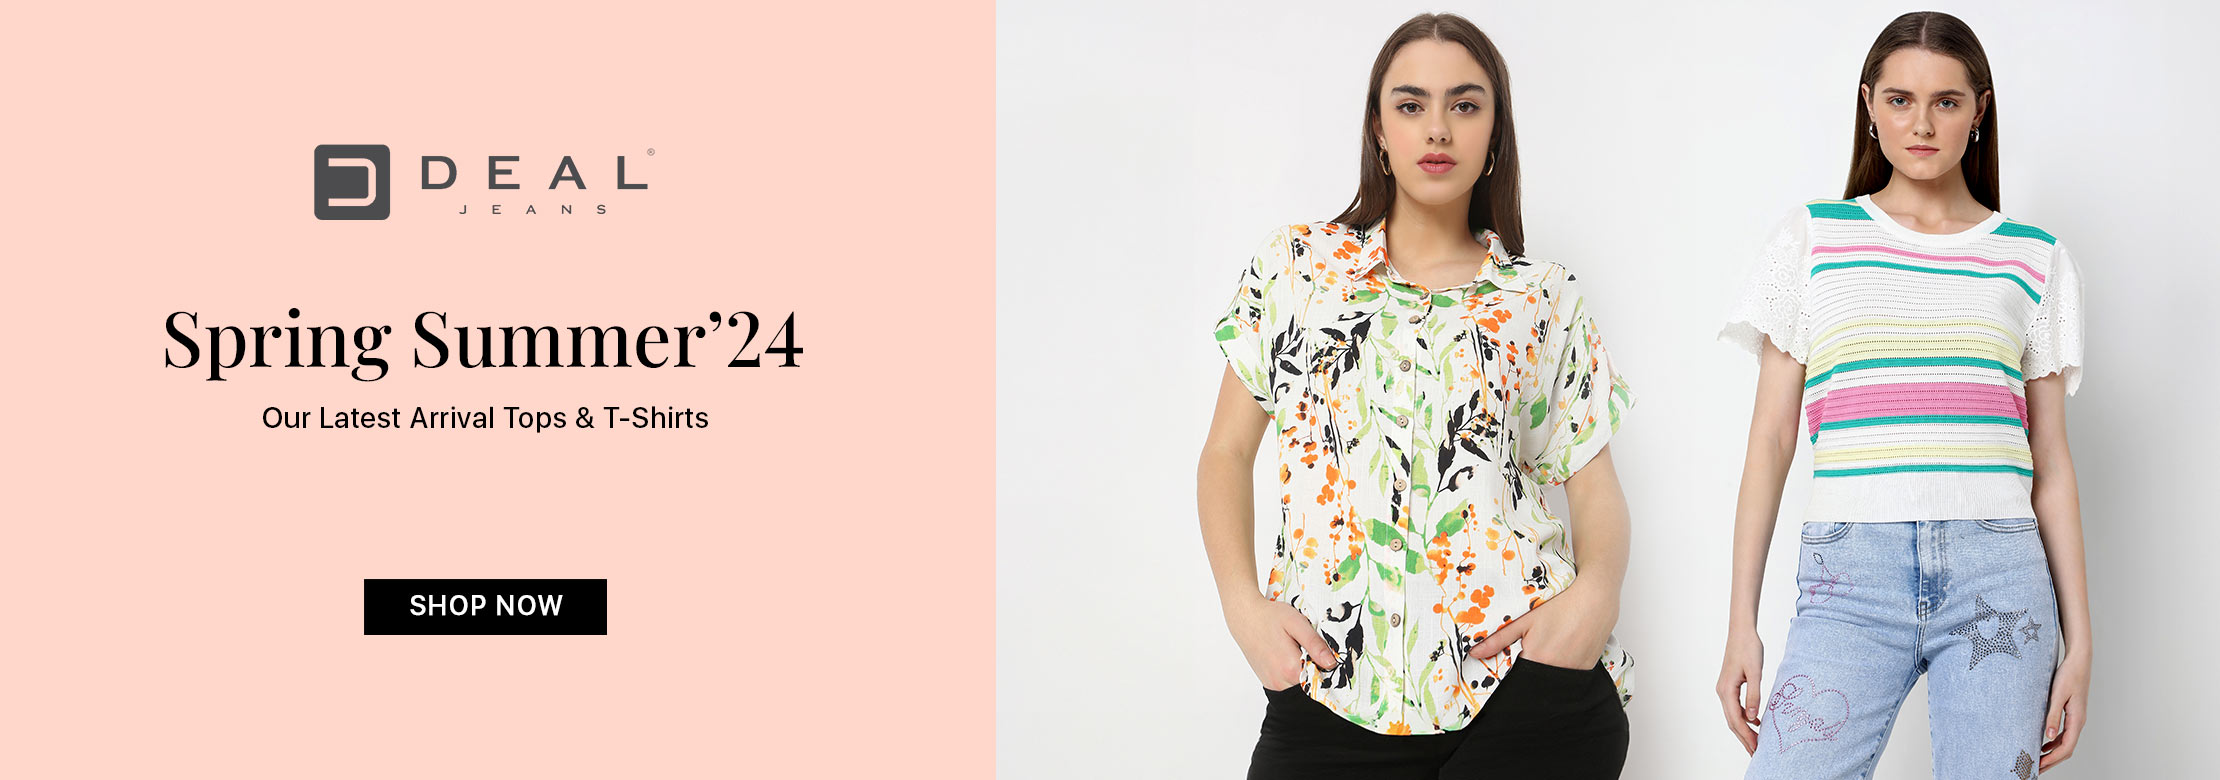 Deal Summer-24 Tops & T-shirt